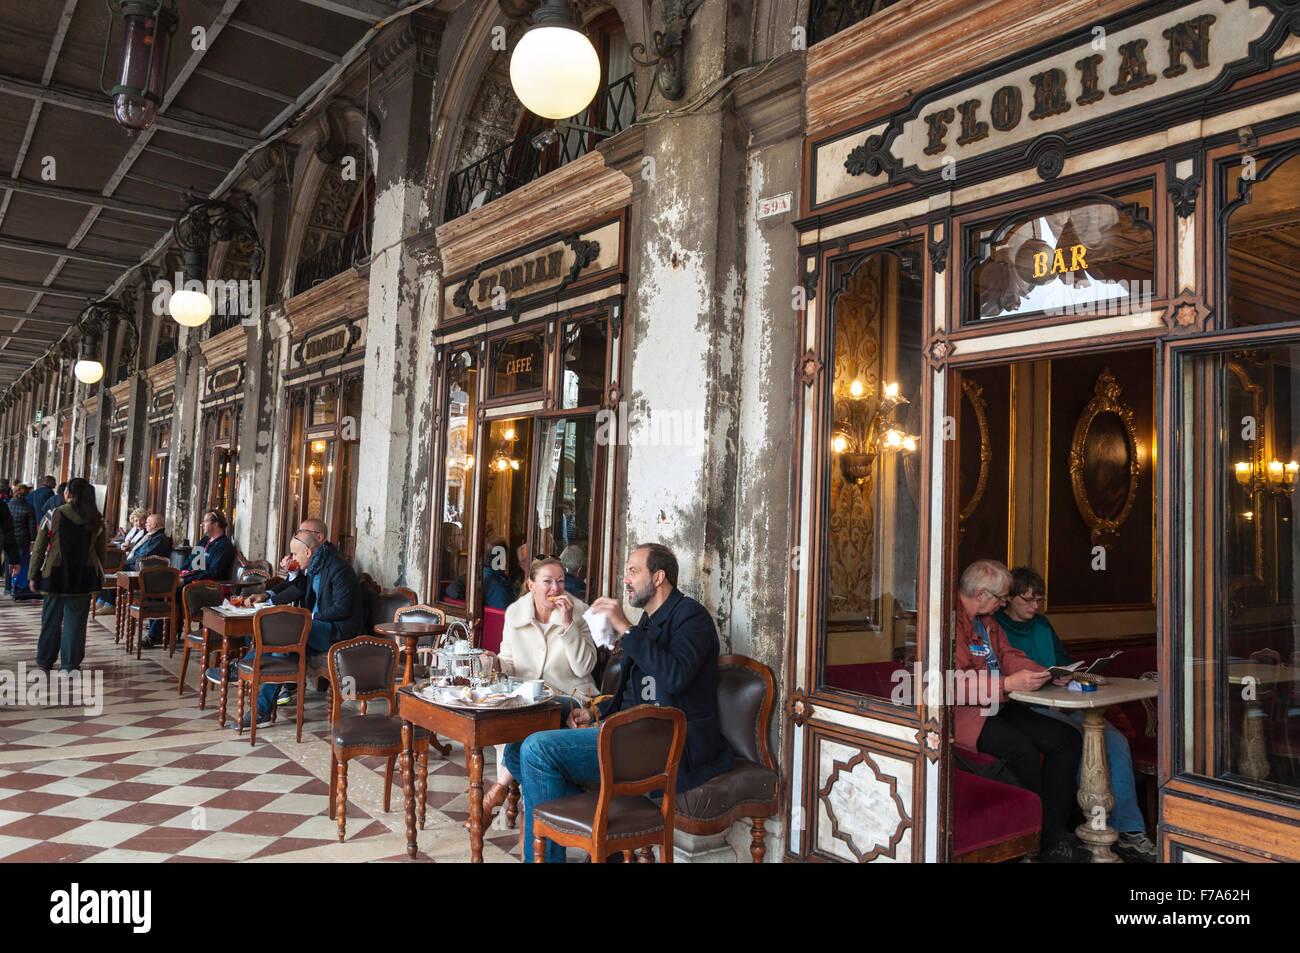 Le bar-café Florian sur la Place Saint Marc à Venise, Italie Banque D'Images